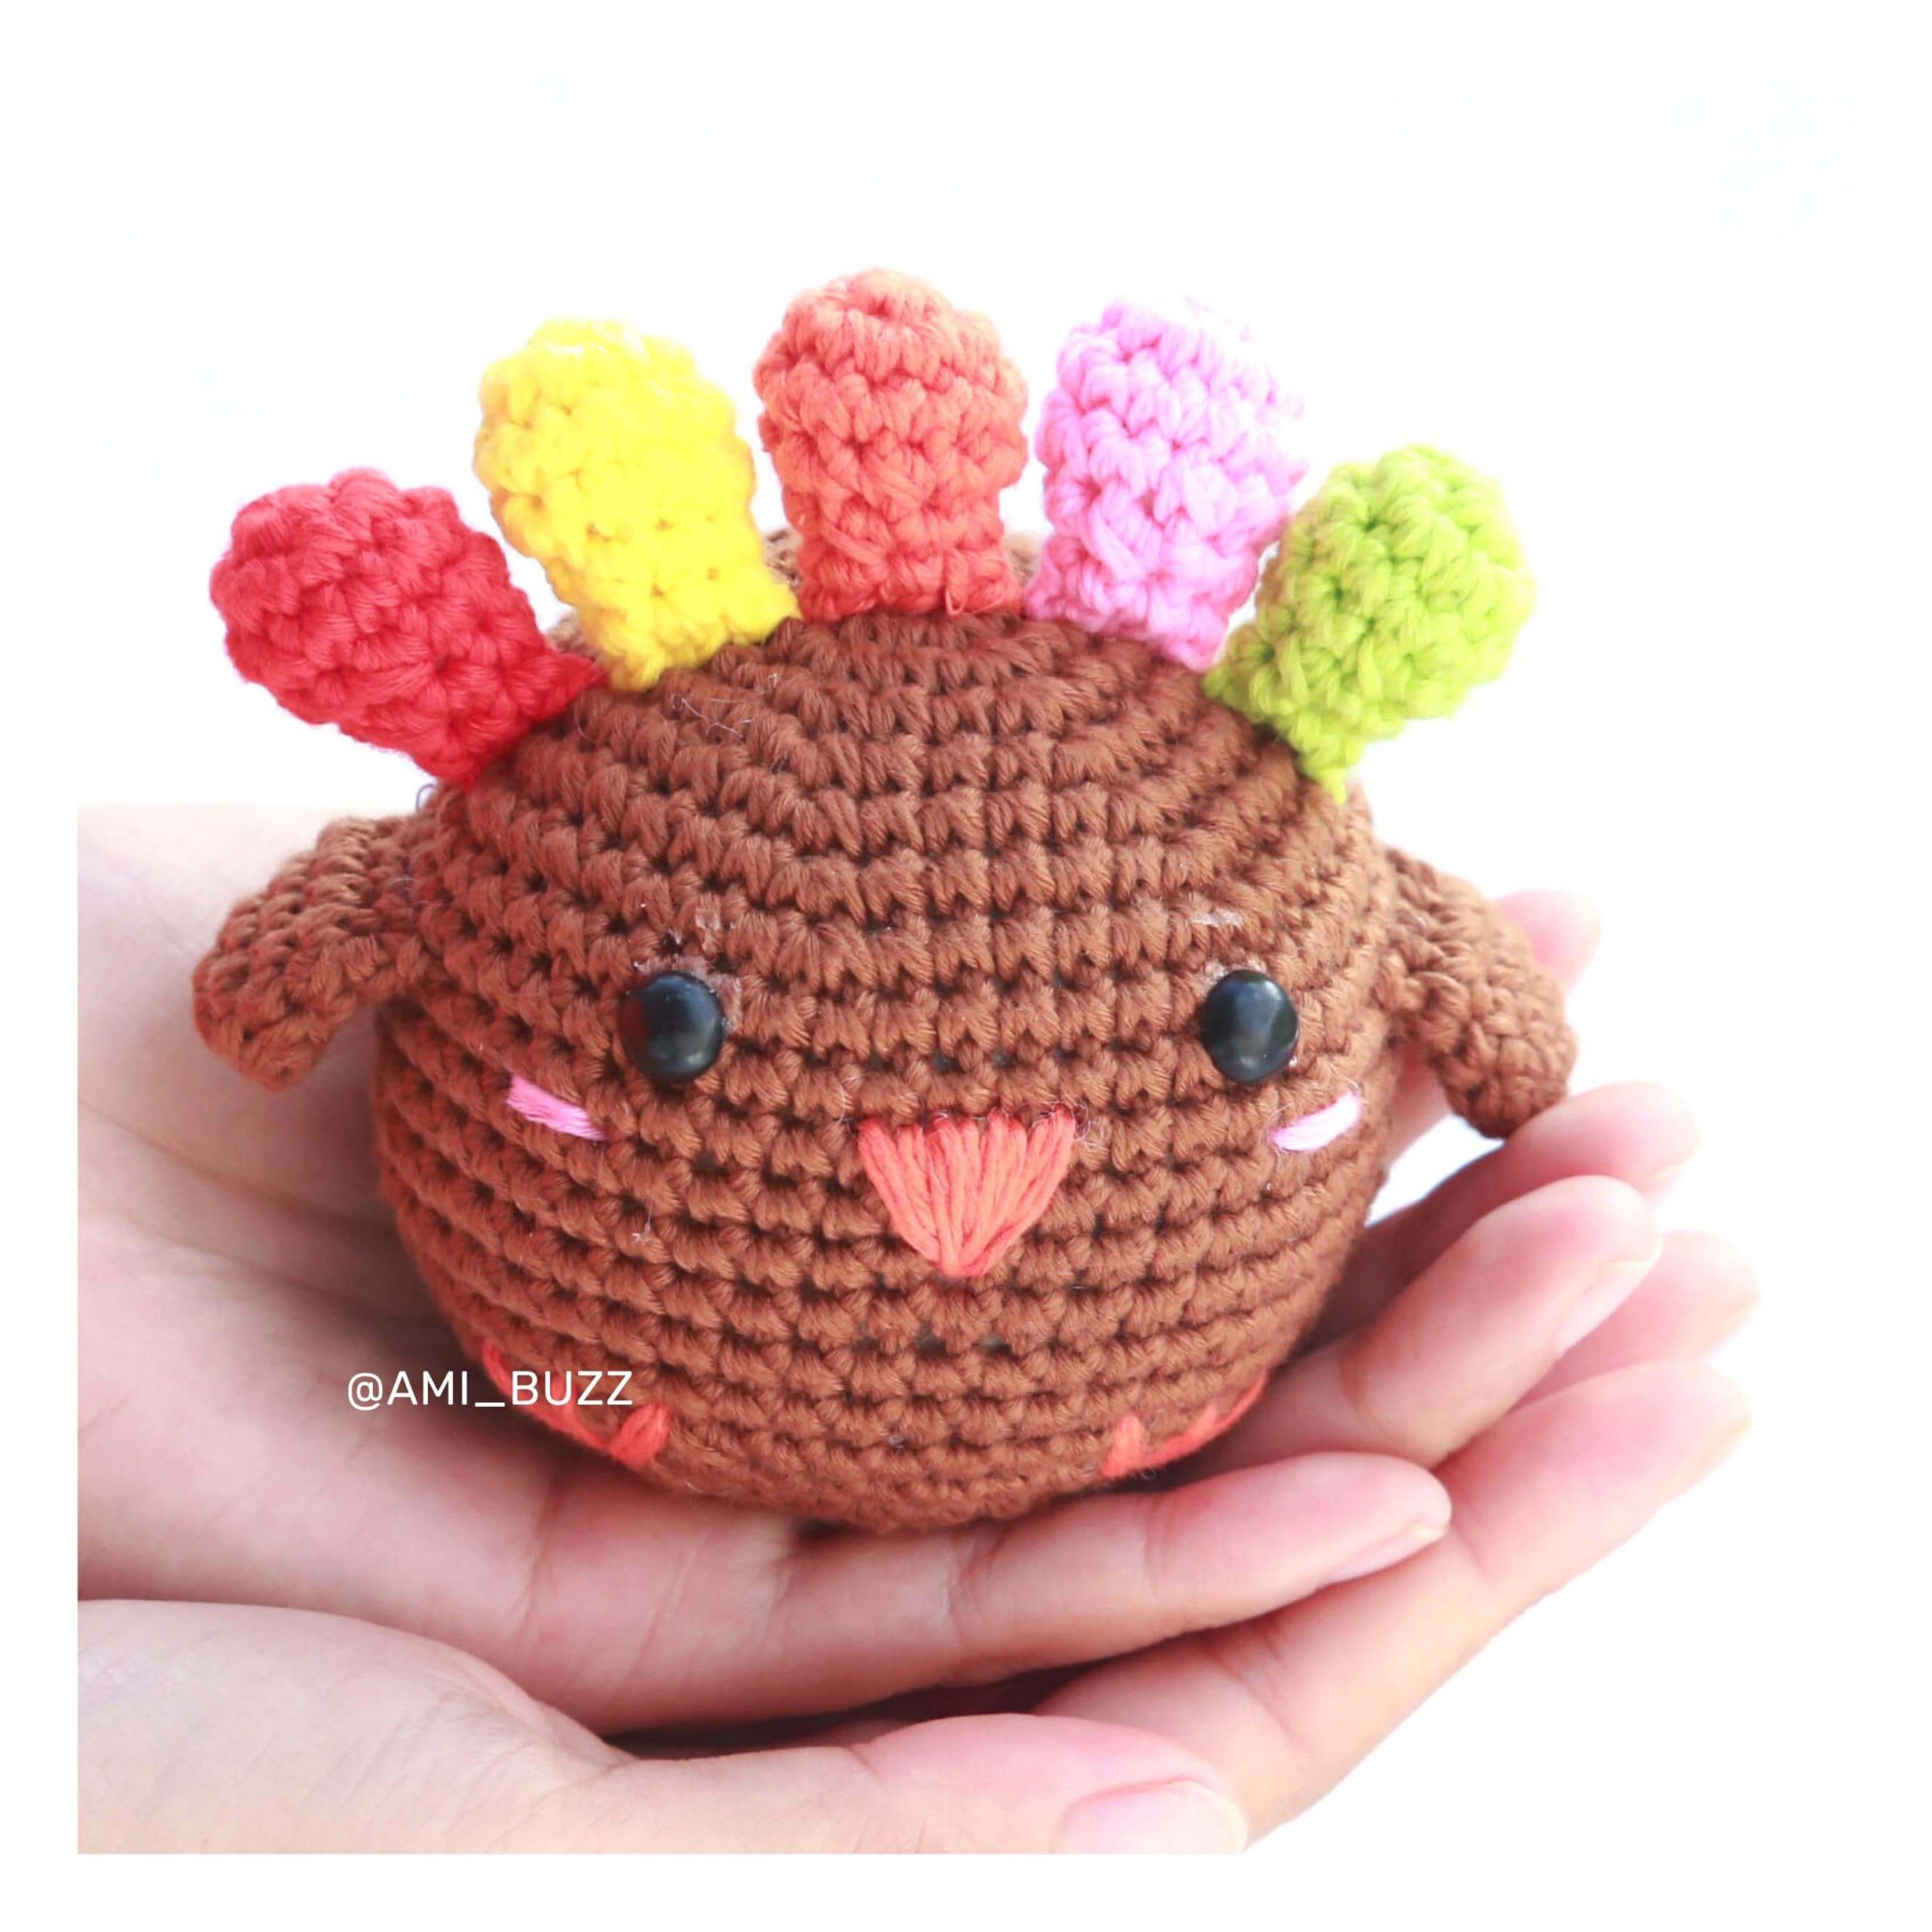 chicken-amigurumi-crochet-pattern-amibuzz (9)